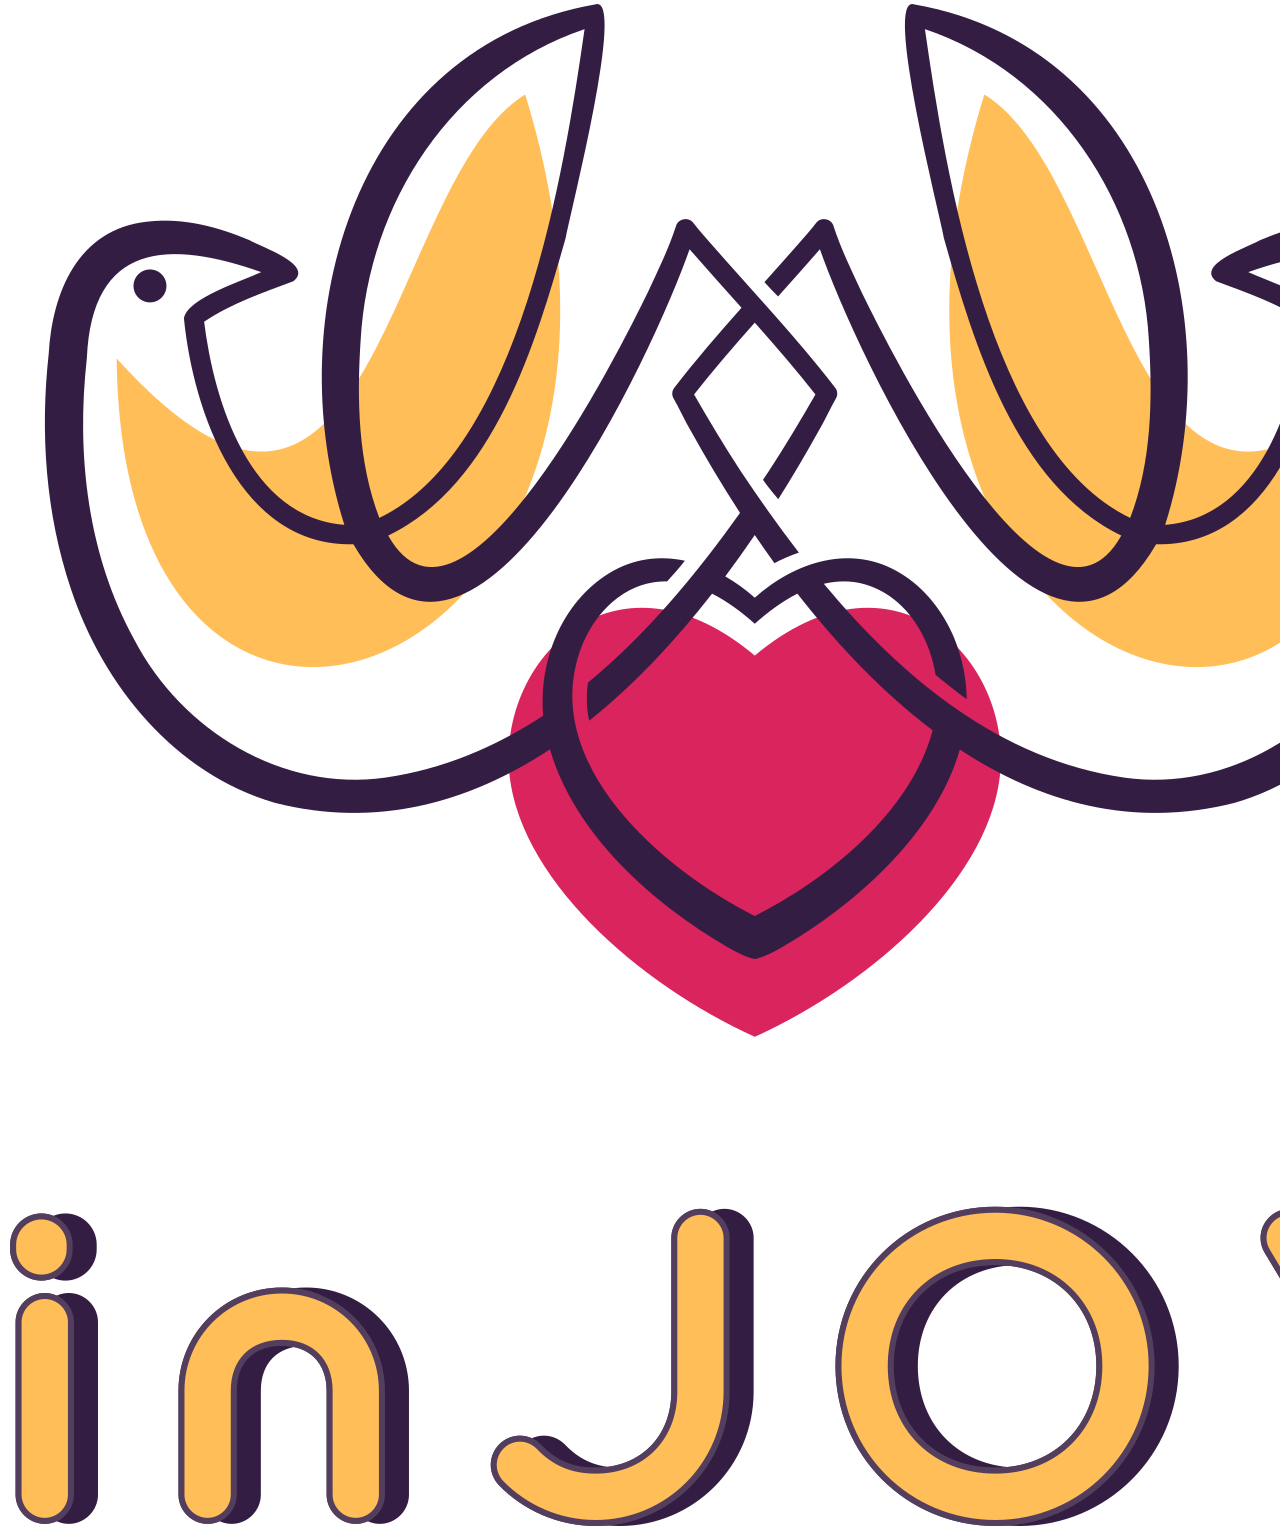 inJOY's logo